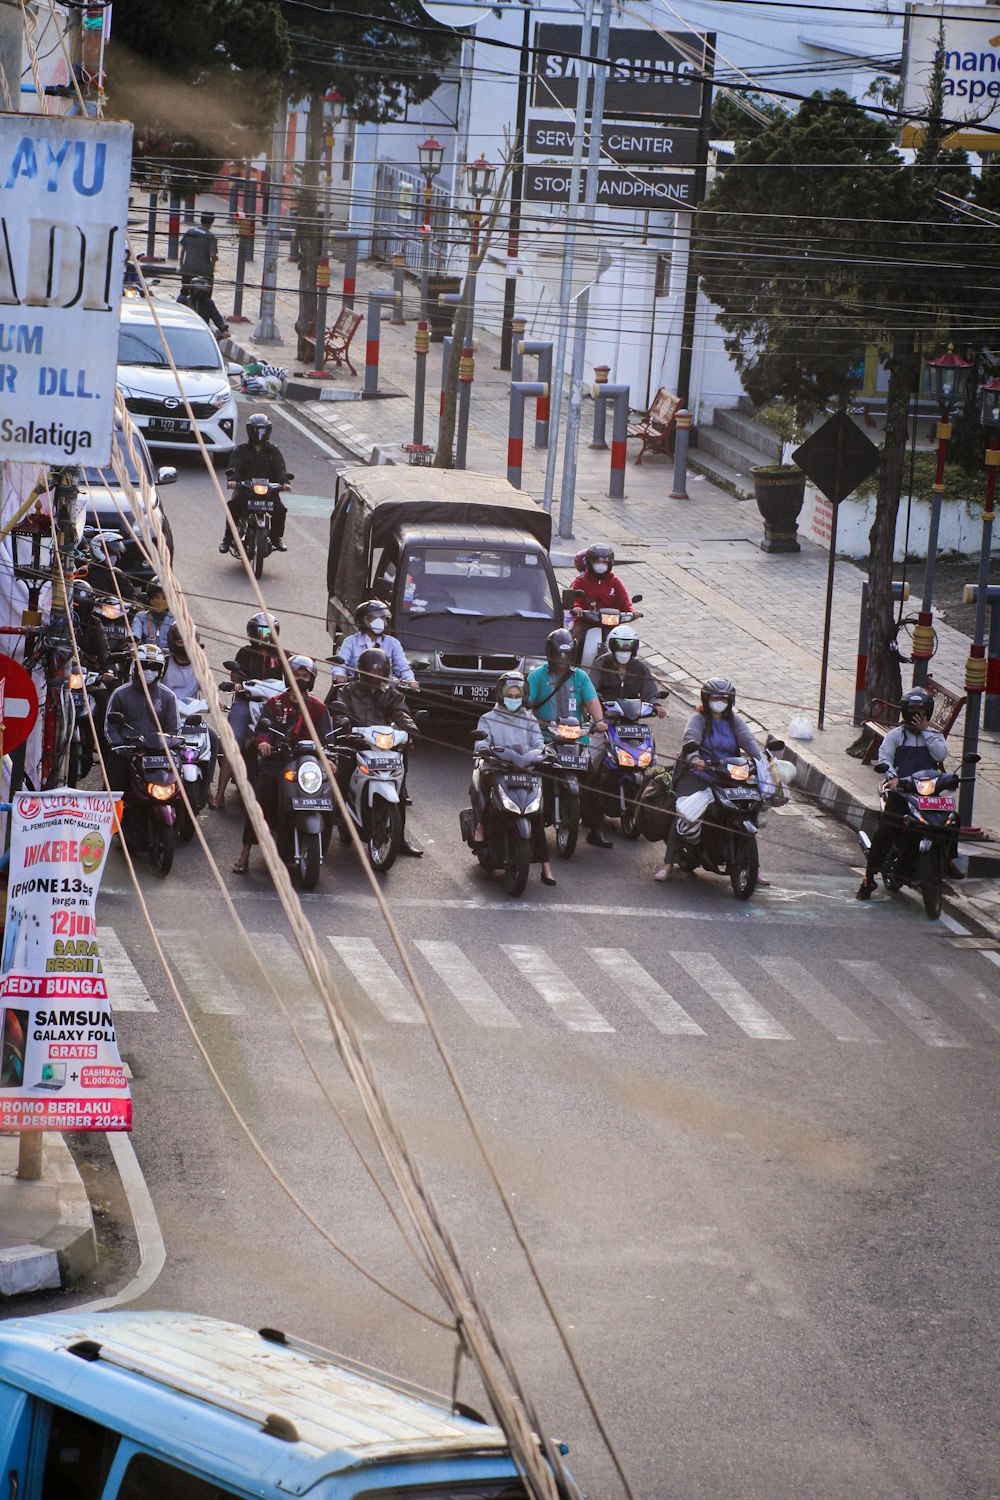 Un gruppo di persone in sella a motociclette lungo una strada